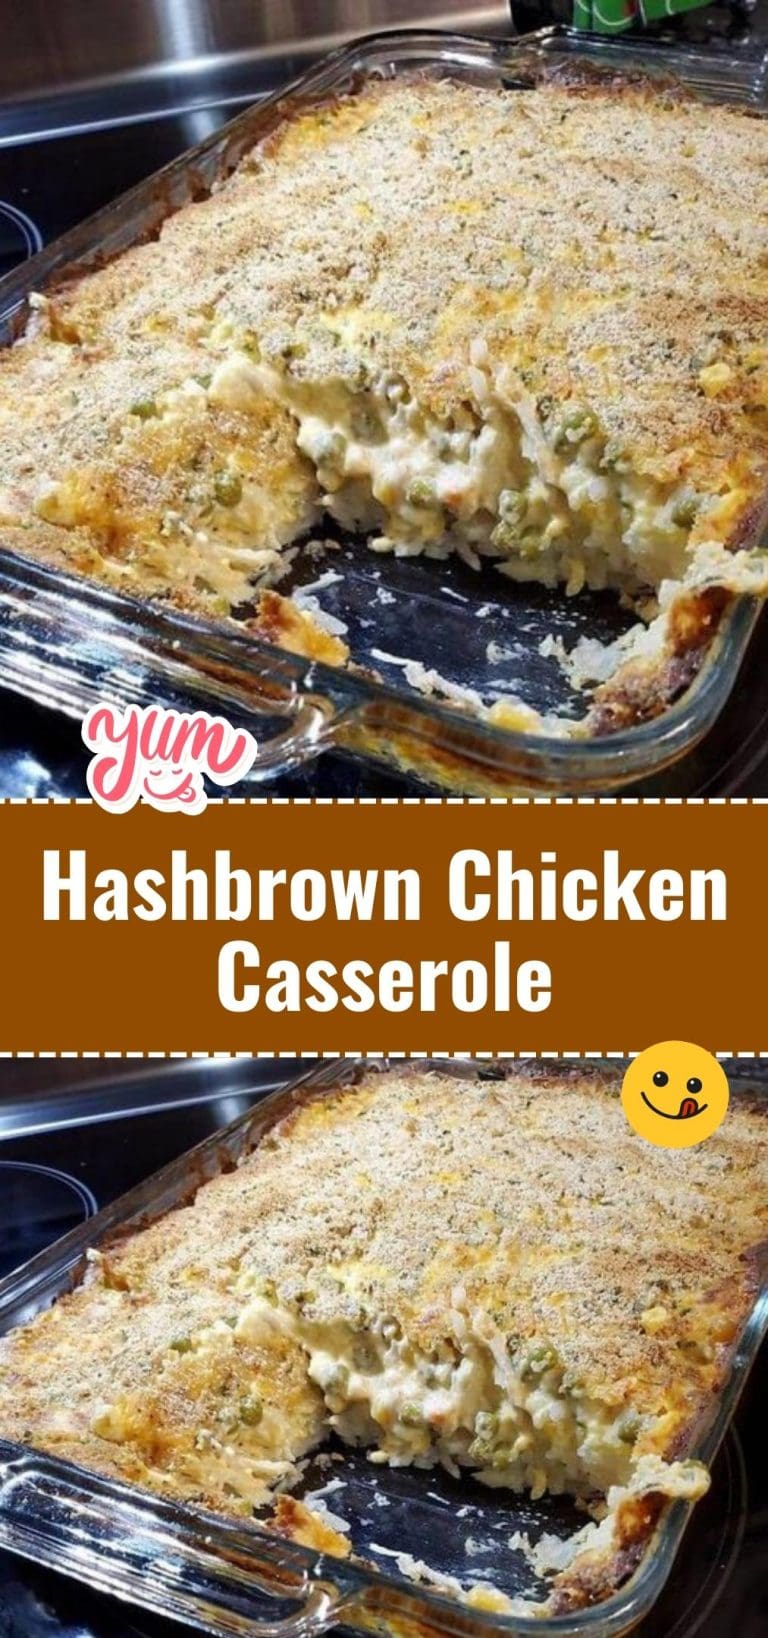 Hashbrown Chicken Casserole